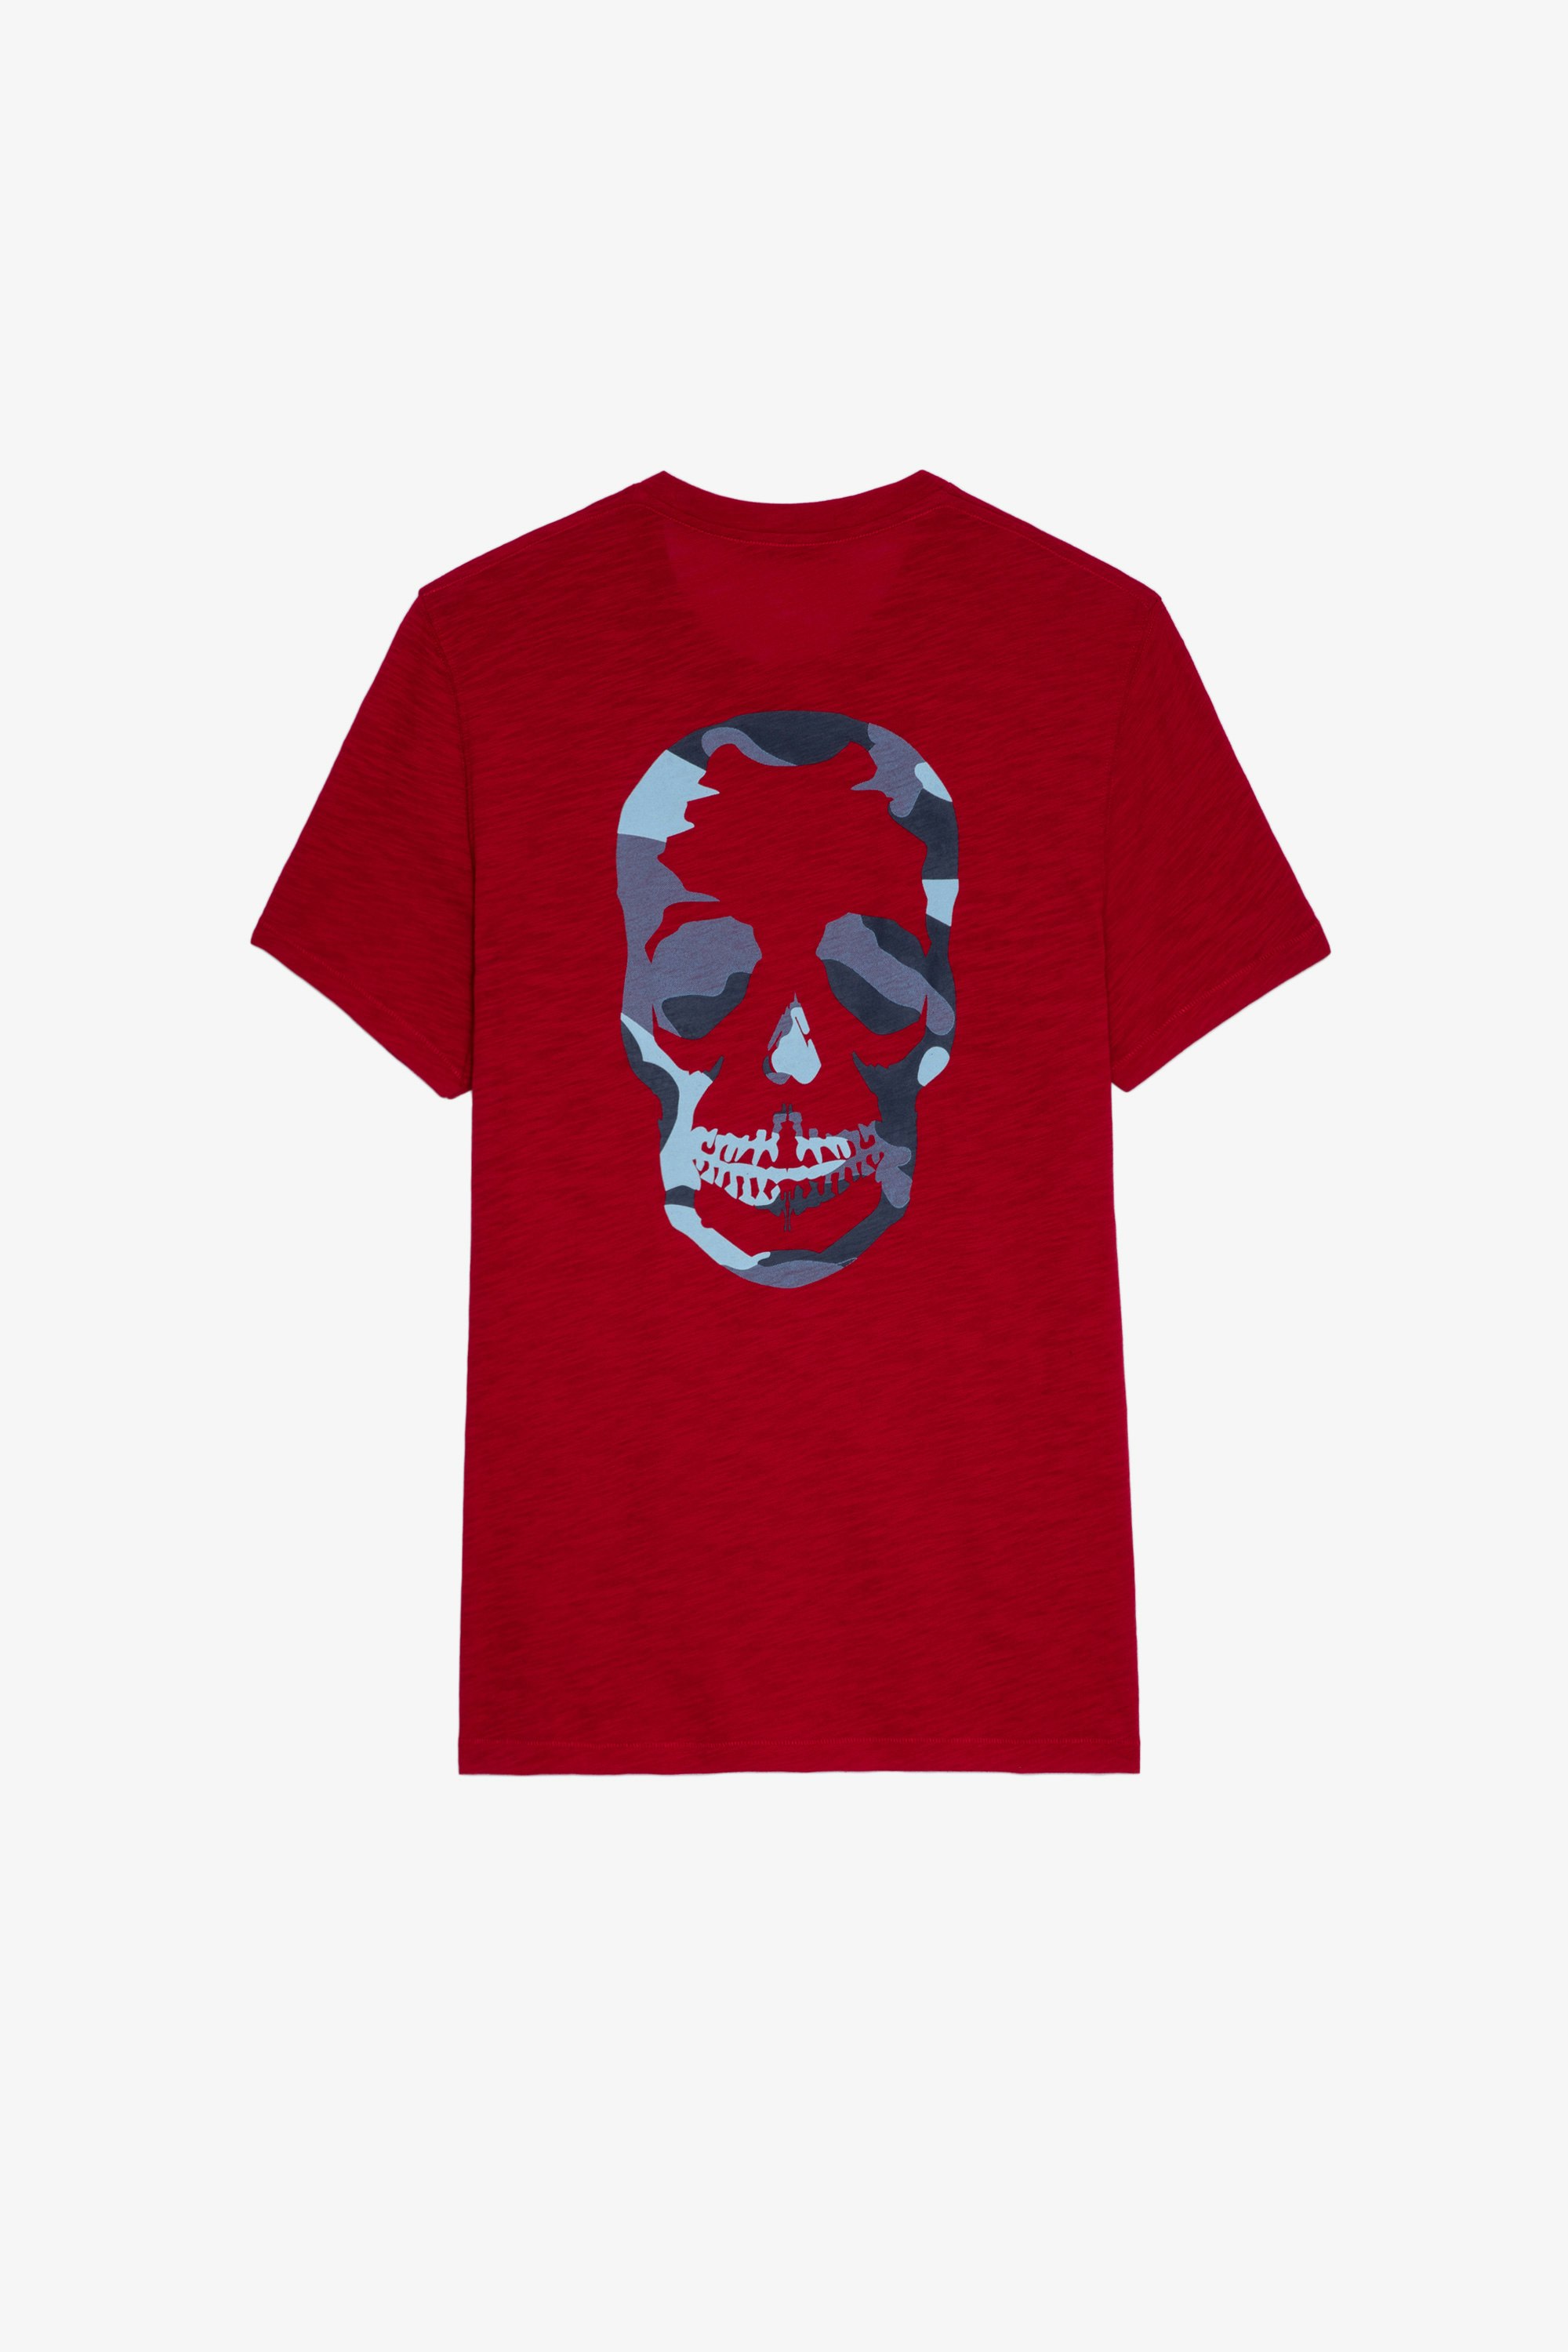 T-shirt Stockholm Flamme T-shirt in cotone fiammato rosso decorata con skull sul retro, da uomo